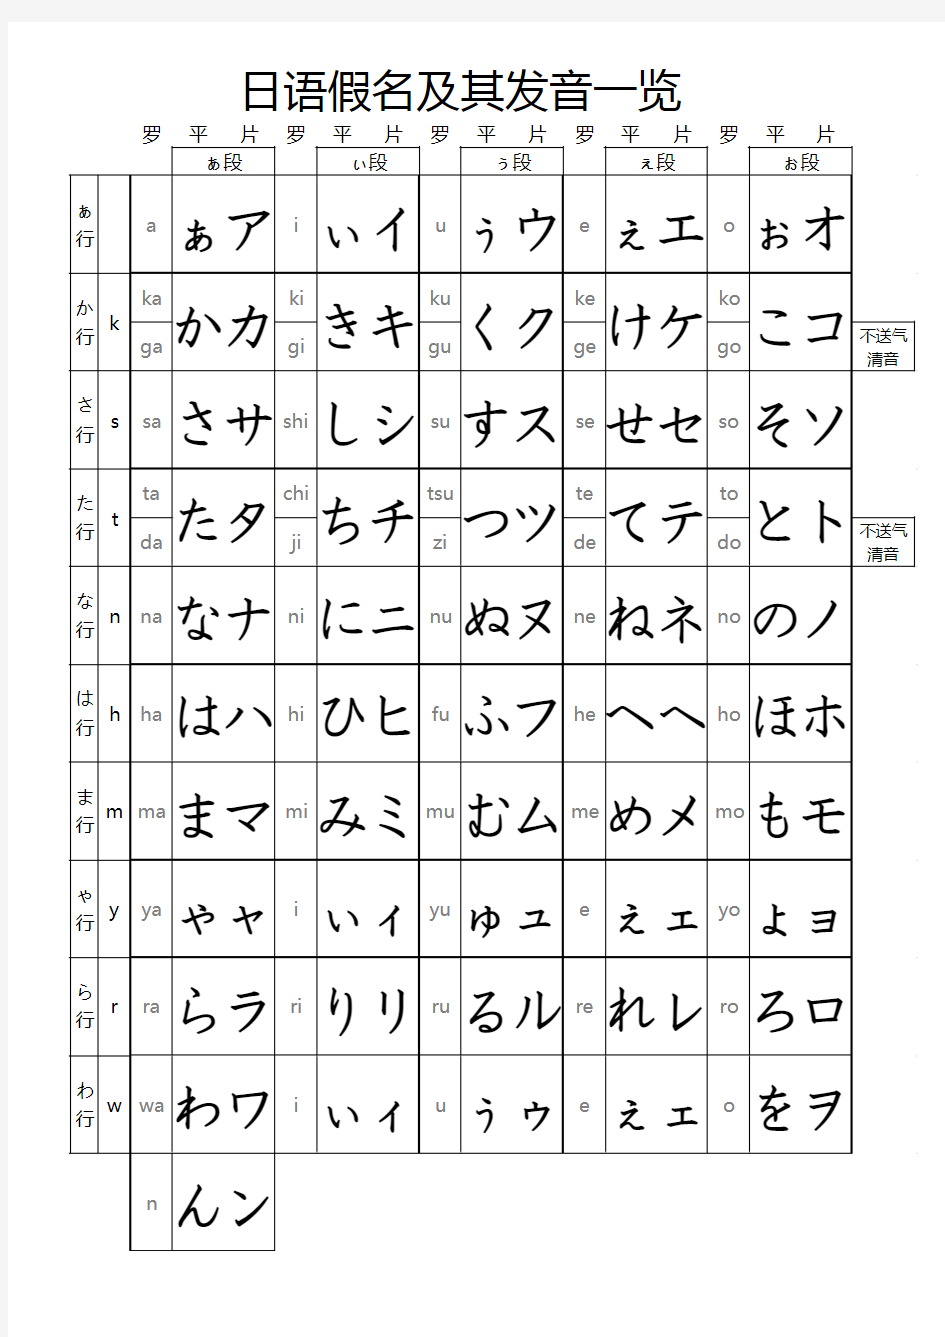 日语假名及其发音一览